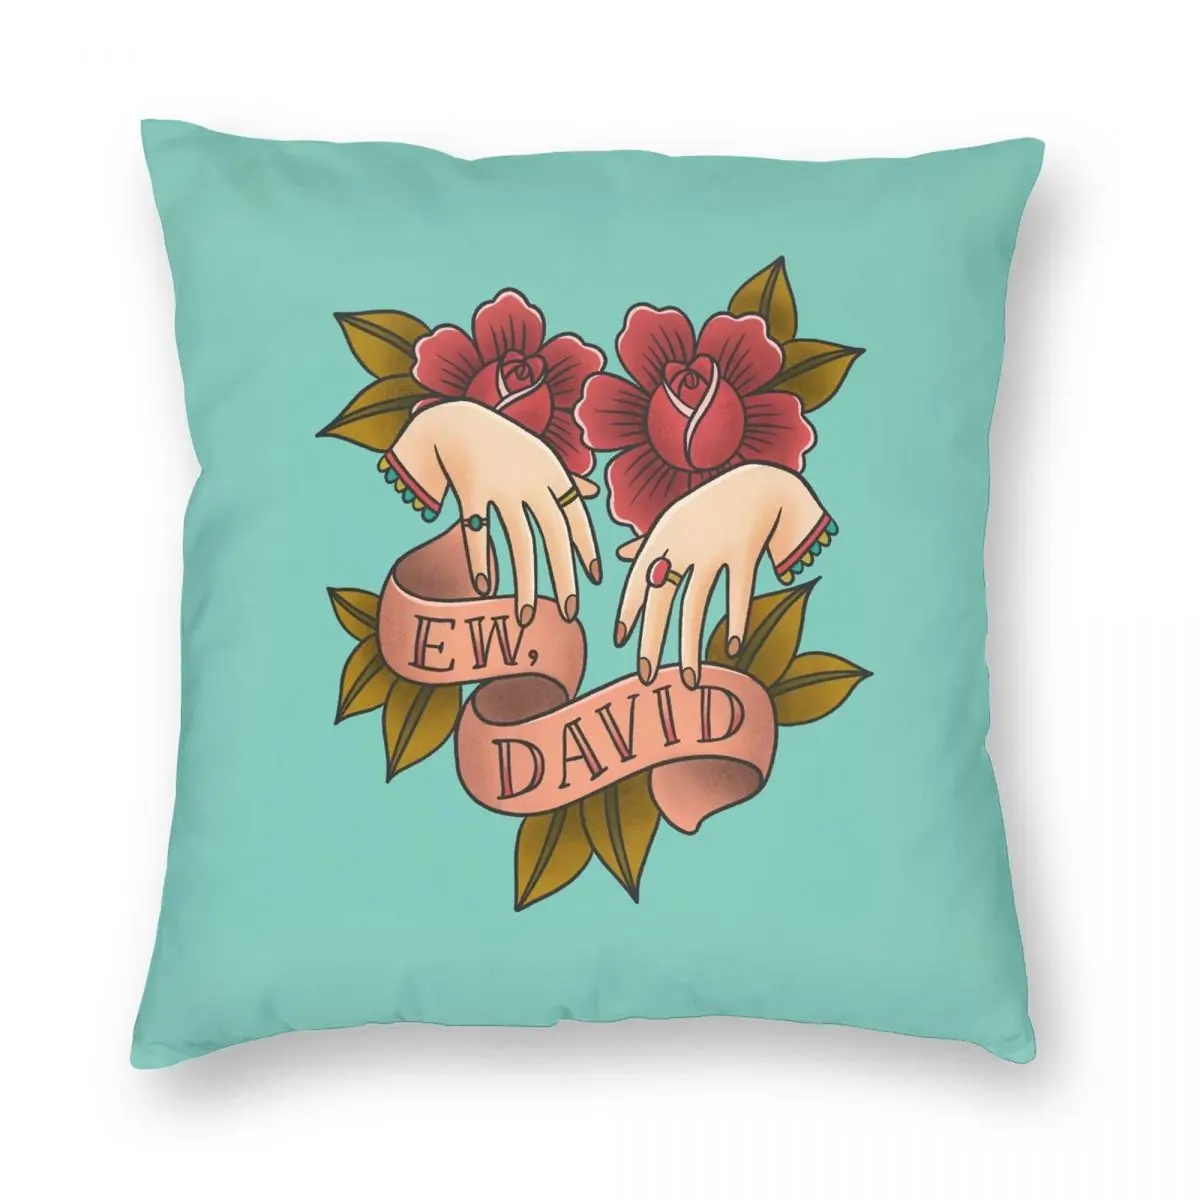 

Ew David Schitt's Creek Alexis Rose Pillowcase Polyester Linen Velvet Creative Zip Decor Throw Pillow Case Room Cushion Cover 18